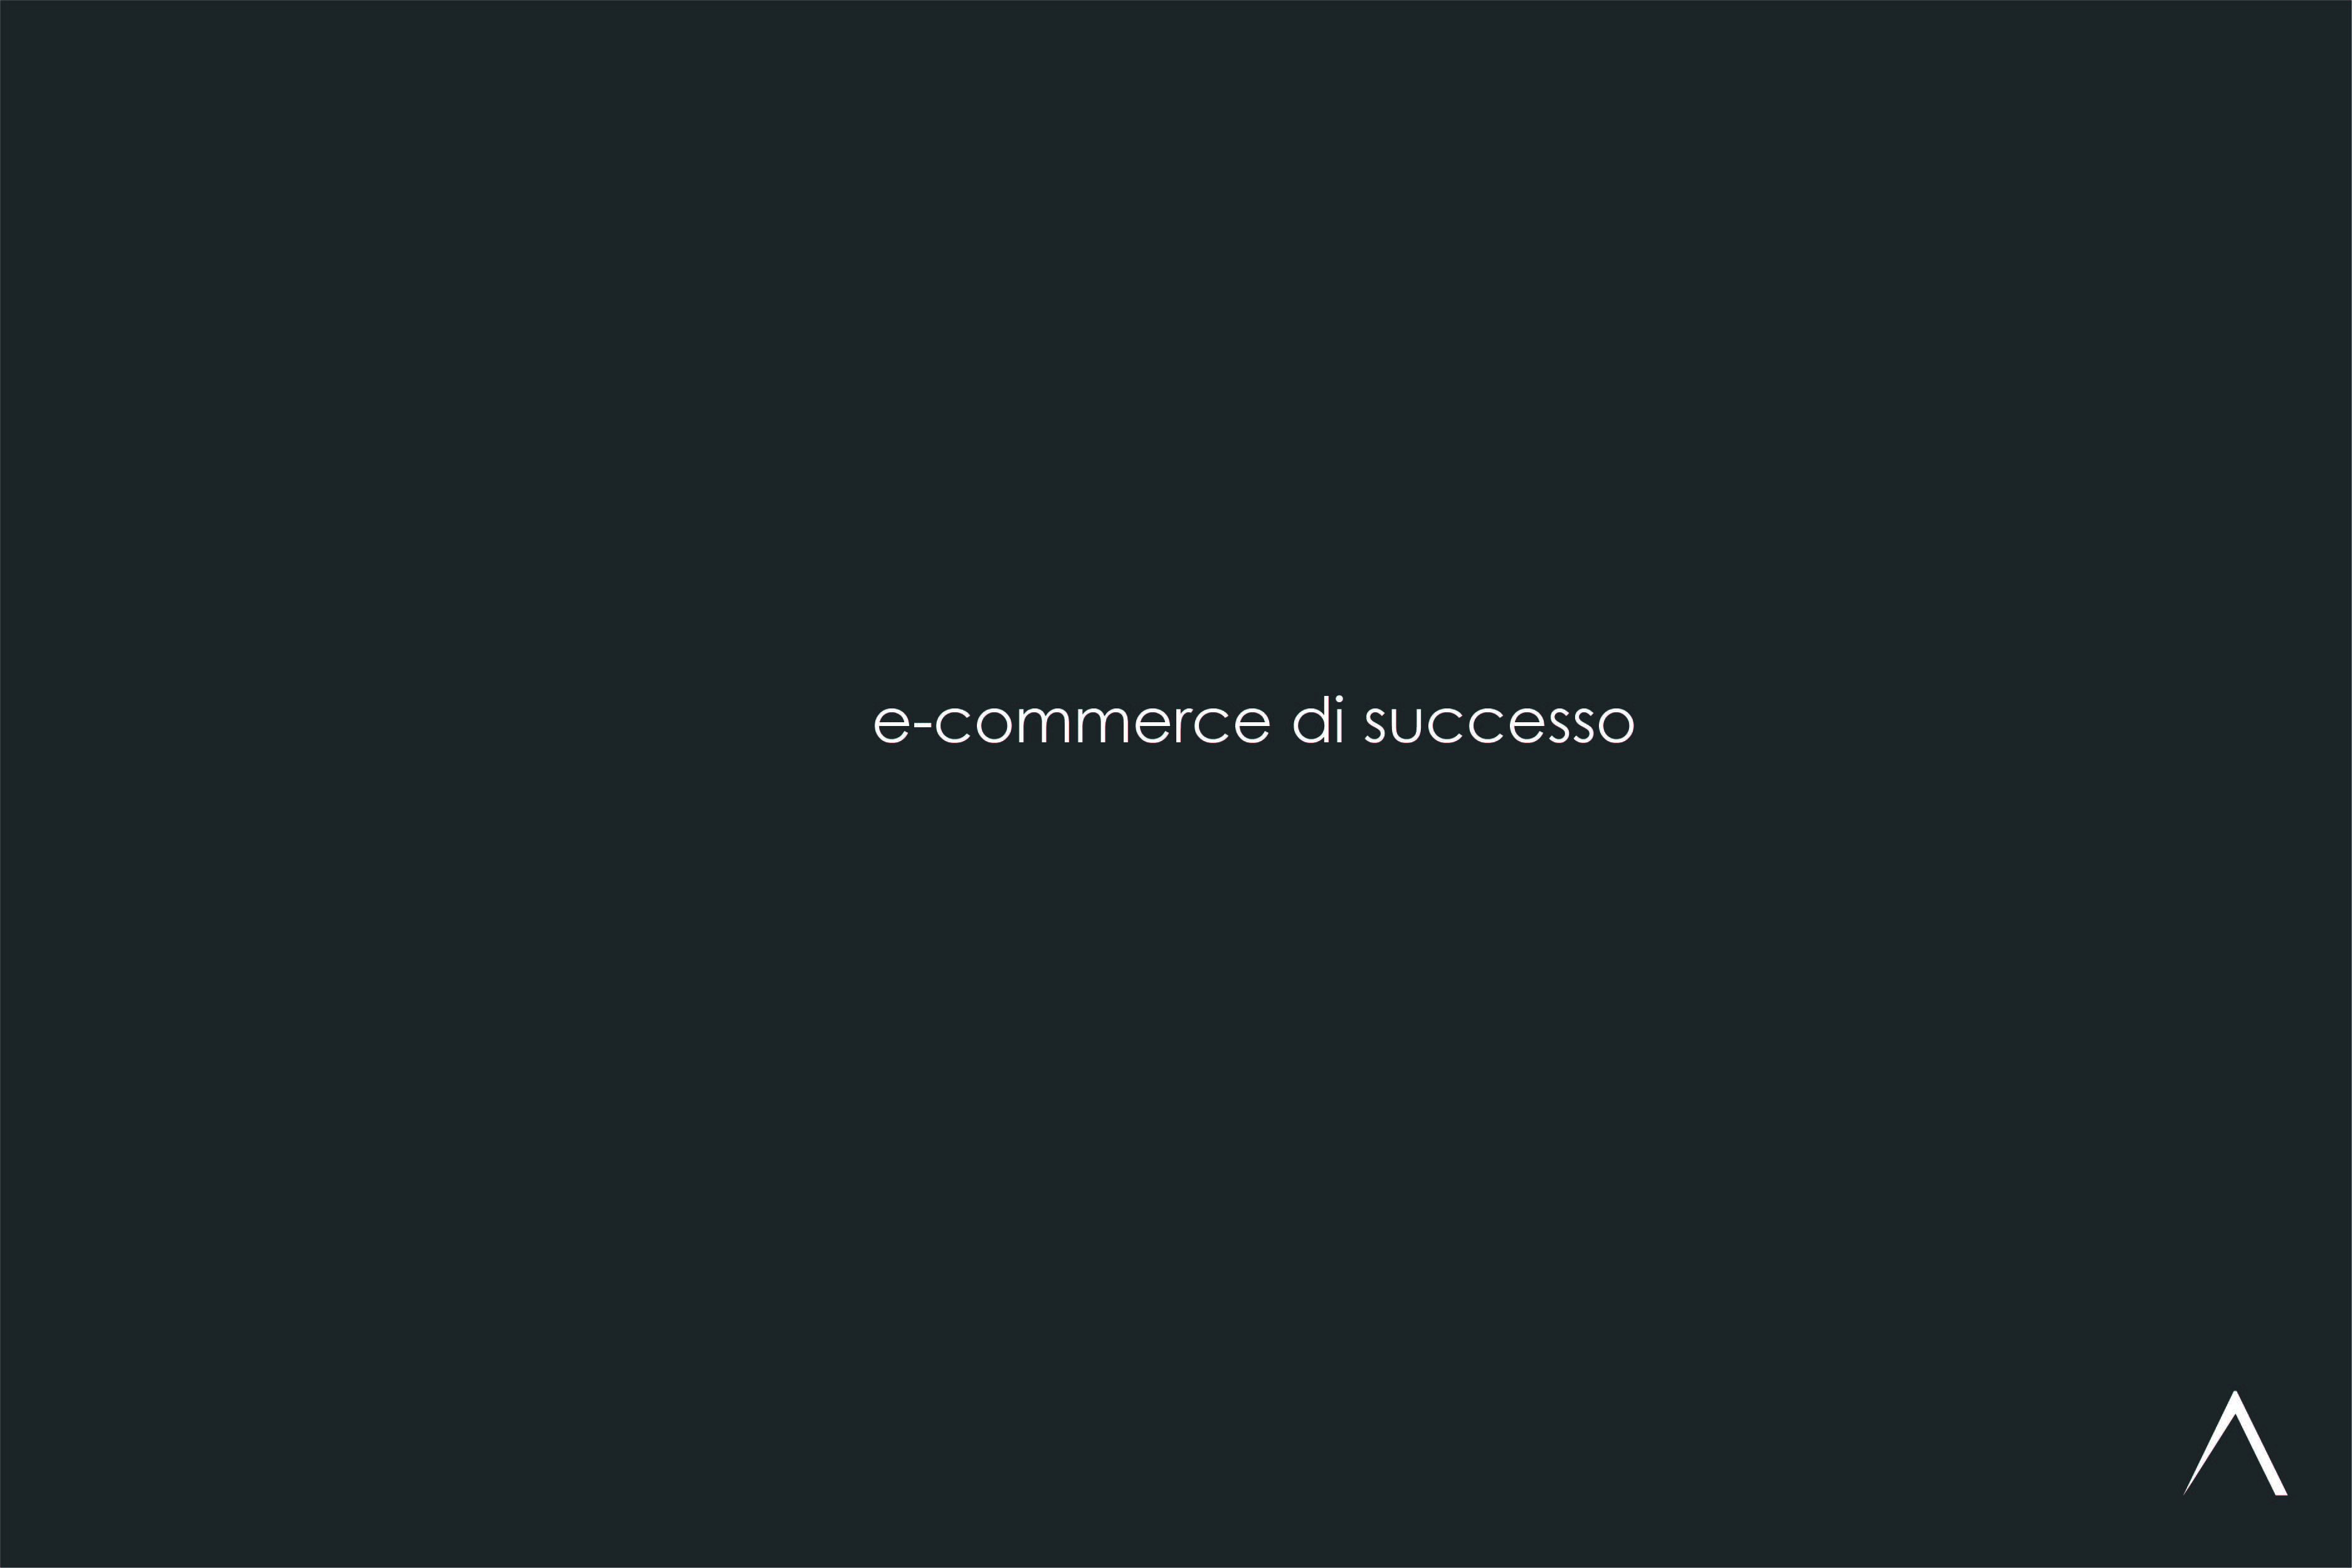 E-commerce di successo, i 10 comandamenti.